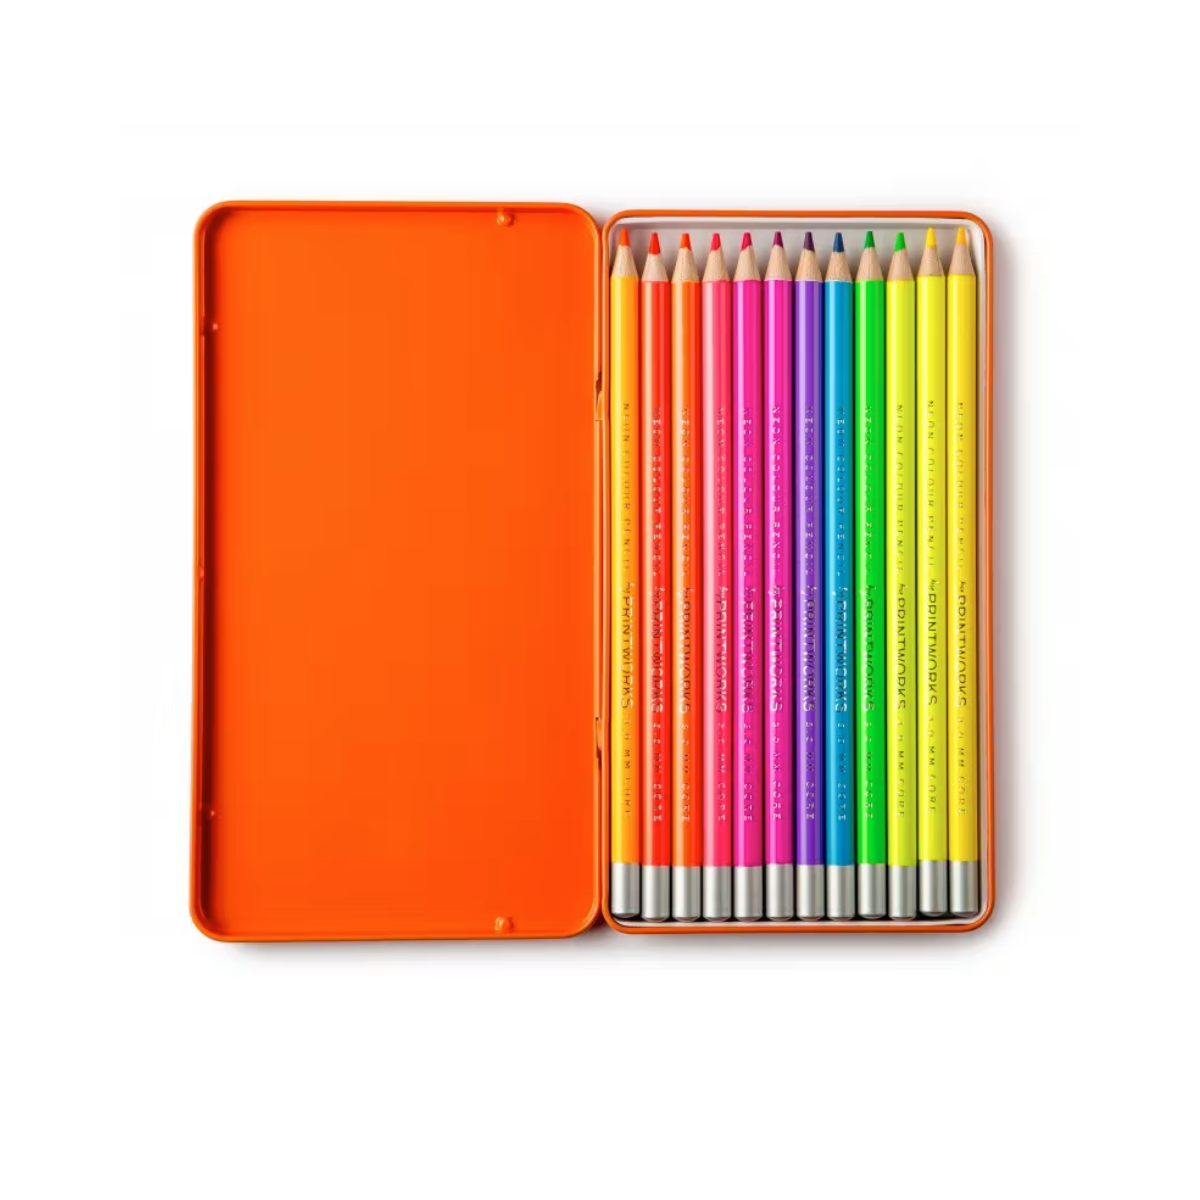 Crayons de couleur - Néon